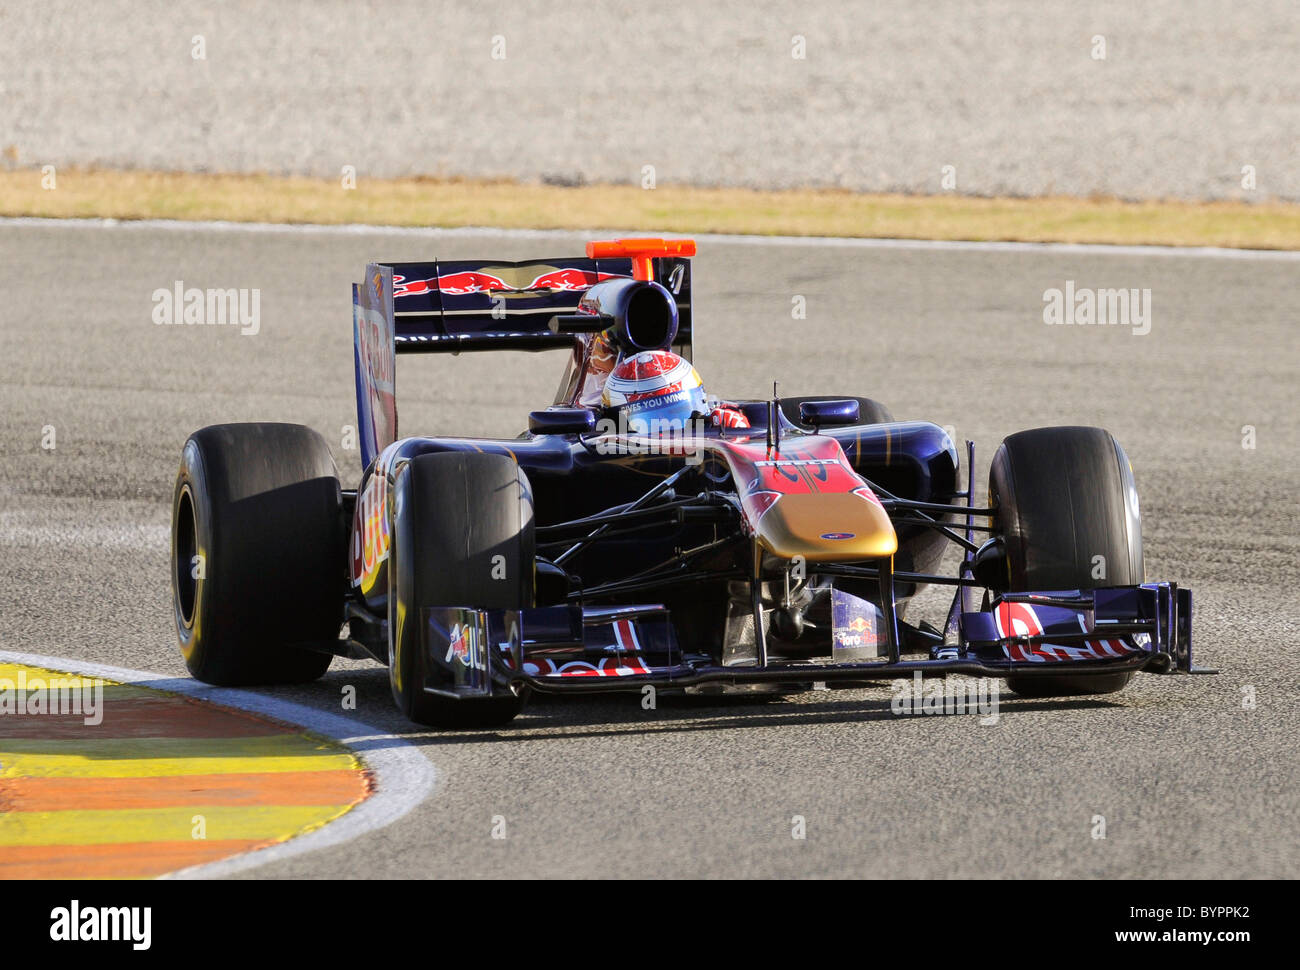 Sebastien Buemi (SUI) in the Scuderia Toro Rosso STR 6 Formula One race car Stock Photo